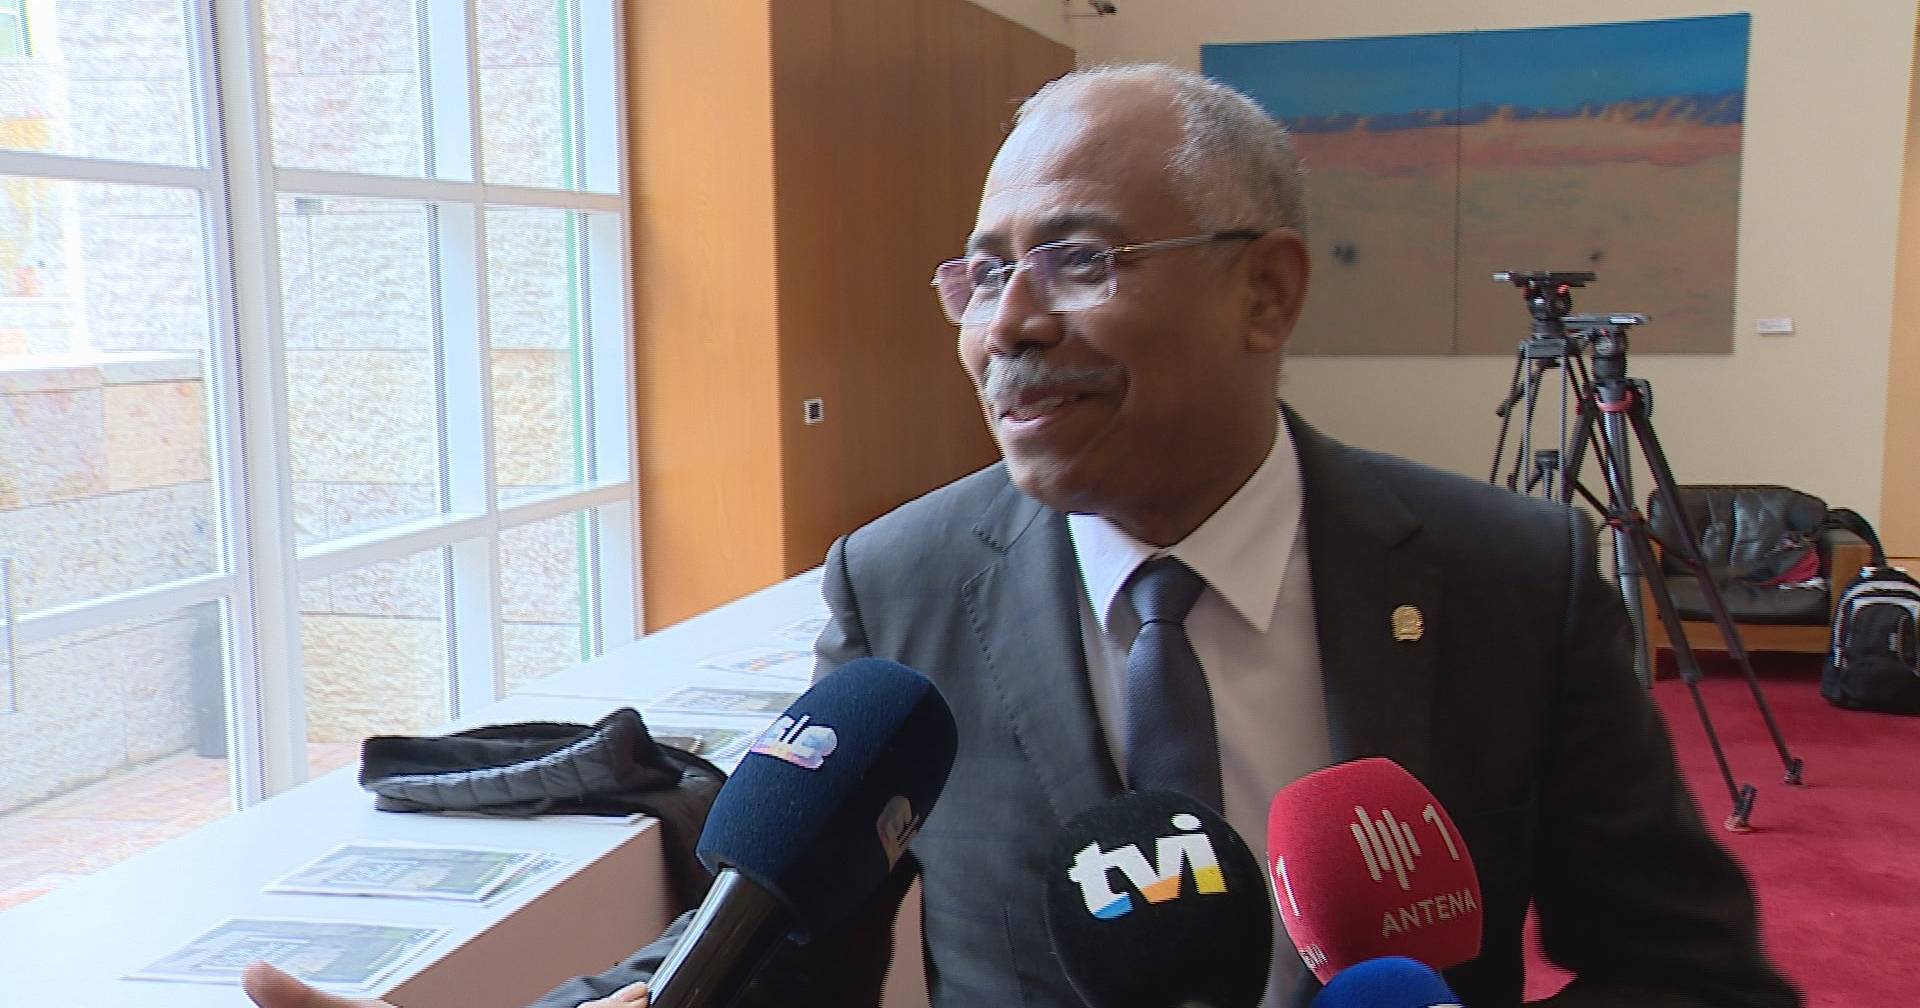 Embaixador Angolano Em Portugal Recusa Comentar Luanda Leaks Sic Notícias 